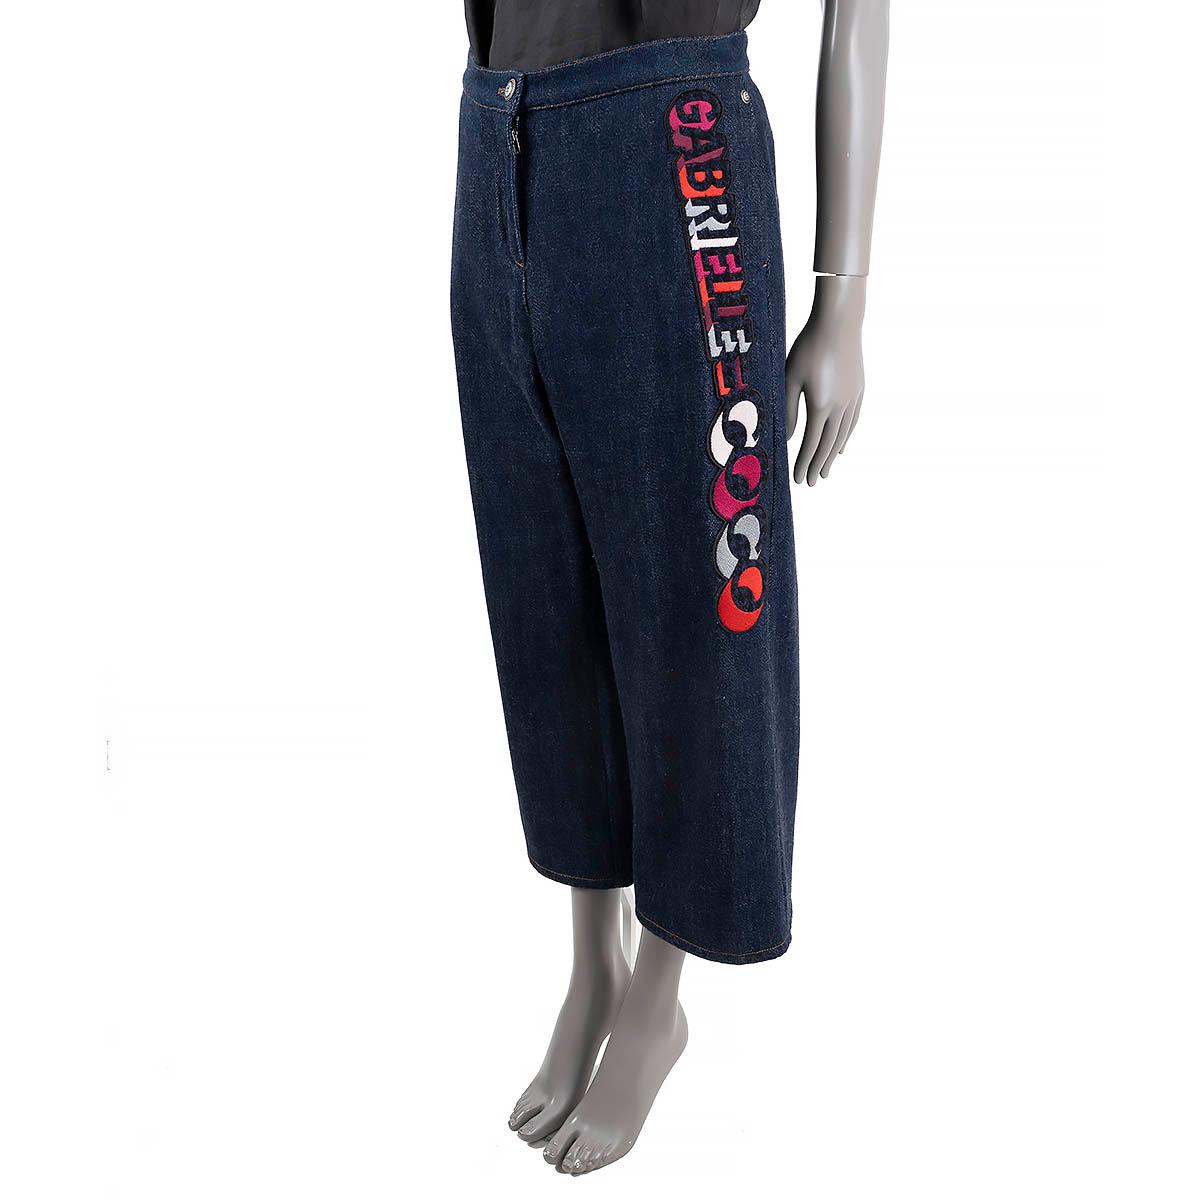 100% authentische Chanel-Jeans aus blauem Baumwoll-Denim (100%) mit einer Gabrielle Coco-Applikation in Rot, Rosa, Blau, Weiß und Grau. Mit Schlitztaschen auf der Vorderseite. Zu öffnen mit einem Reißverschluss und einem CC-Logo-Knopf auf der